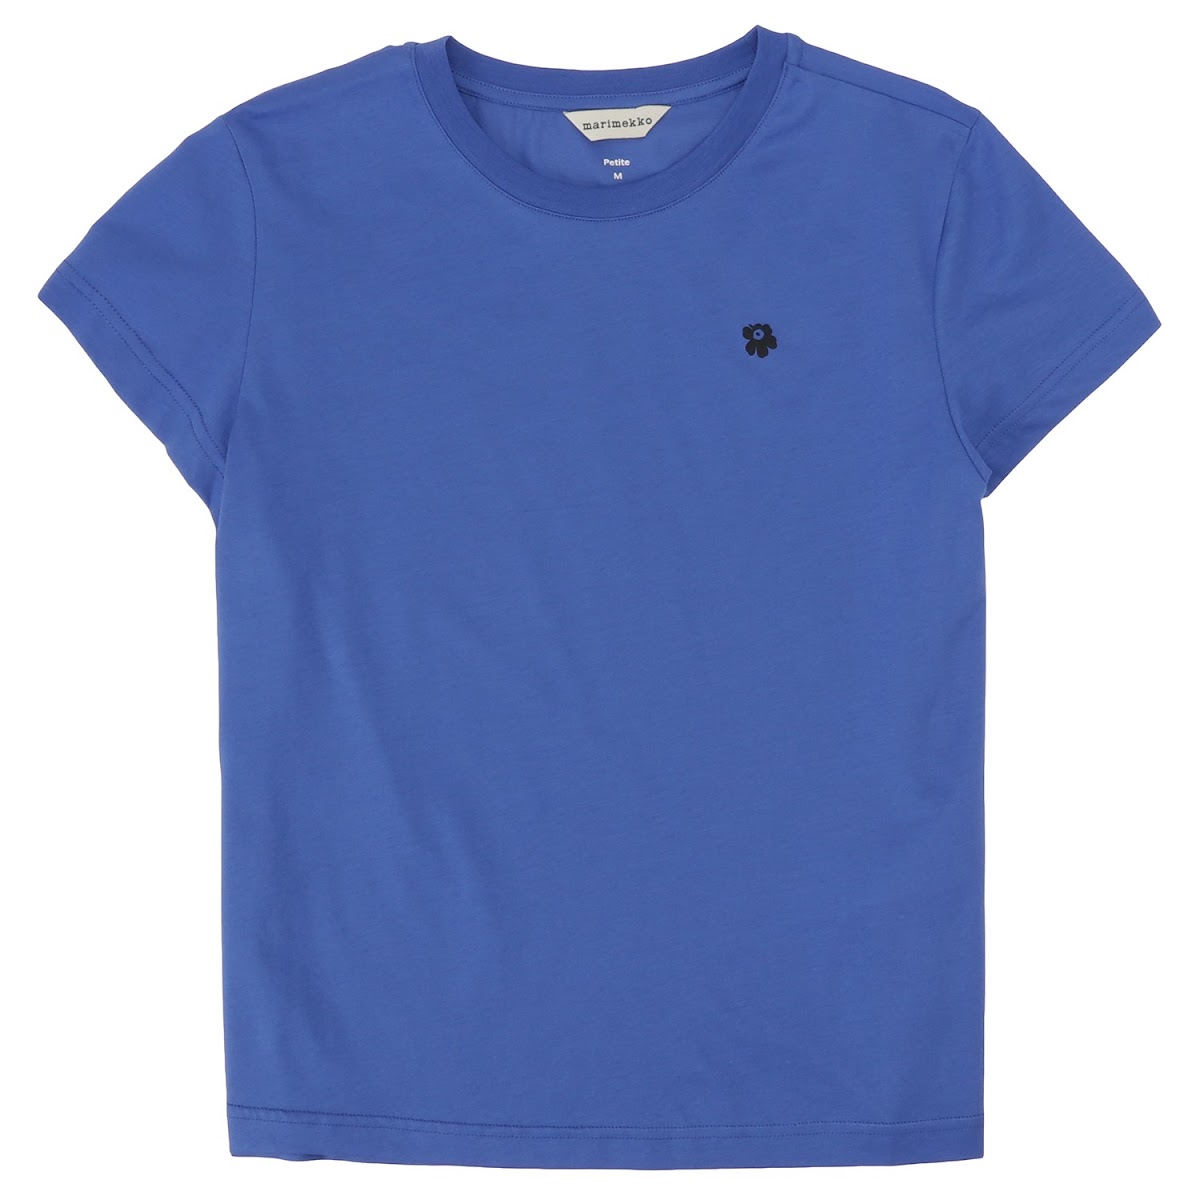 マリメッコ marimekko 091121 590 S ウニッコ ワンポイント クルーネック 半袖 Tシャツ Sサイズ ブルー レディース ユニセックス Silla Unikko Placement T-Shirt